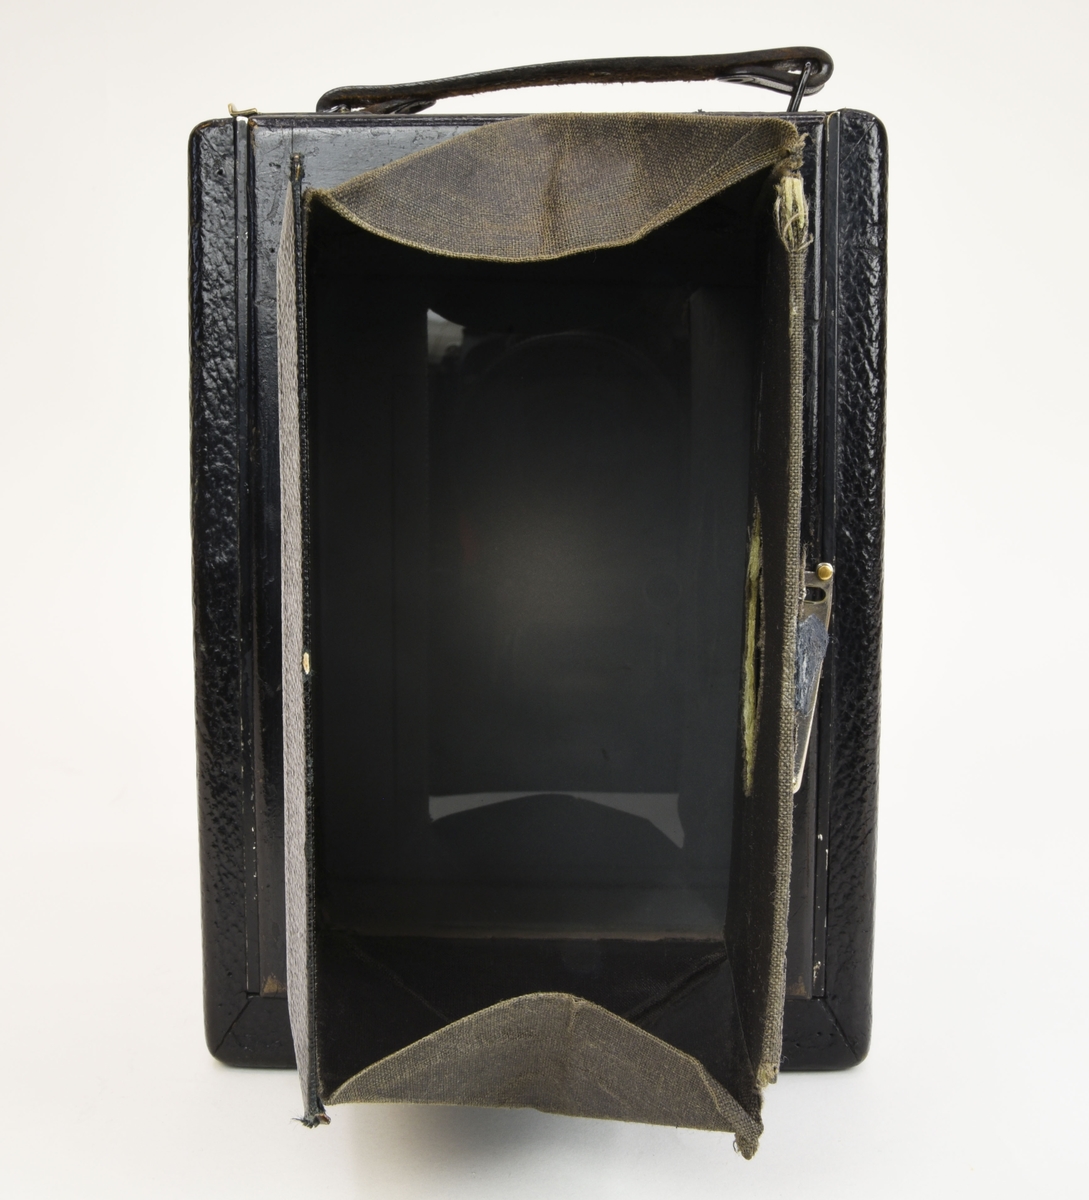 En bälgkamera (:3) som tar glasnegativ i storlek 9 x 12 cm och dess tillhörande kameraväska (:4).

Kamerakroppen är gjord av trä men själva kamerakomponenterna är gjorda av metall och glas. Objektivet är ett Carl Zeiss Jena av Tessar modell 65mm f 4,5. Slutaren av typen Compur. Kameran är utvändigt klädd med konstläder.

Kameraväskan (:4) verkar bestå av pappskivor som är klädda med svart konstläder. Invändigt är den klädd med röd textil. Väskan har ett enklare lås av metall.